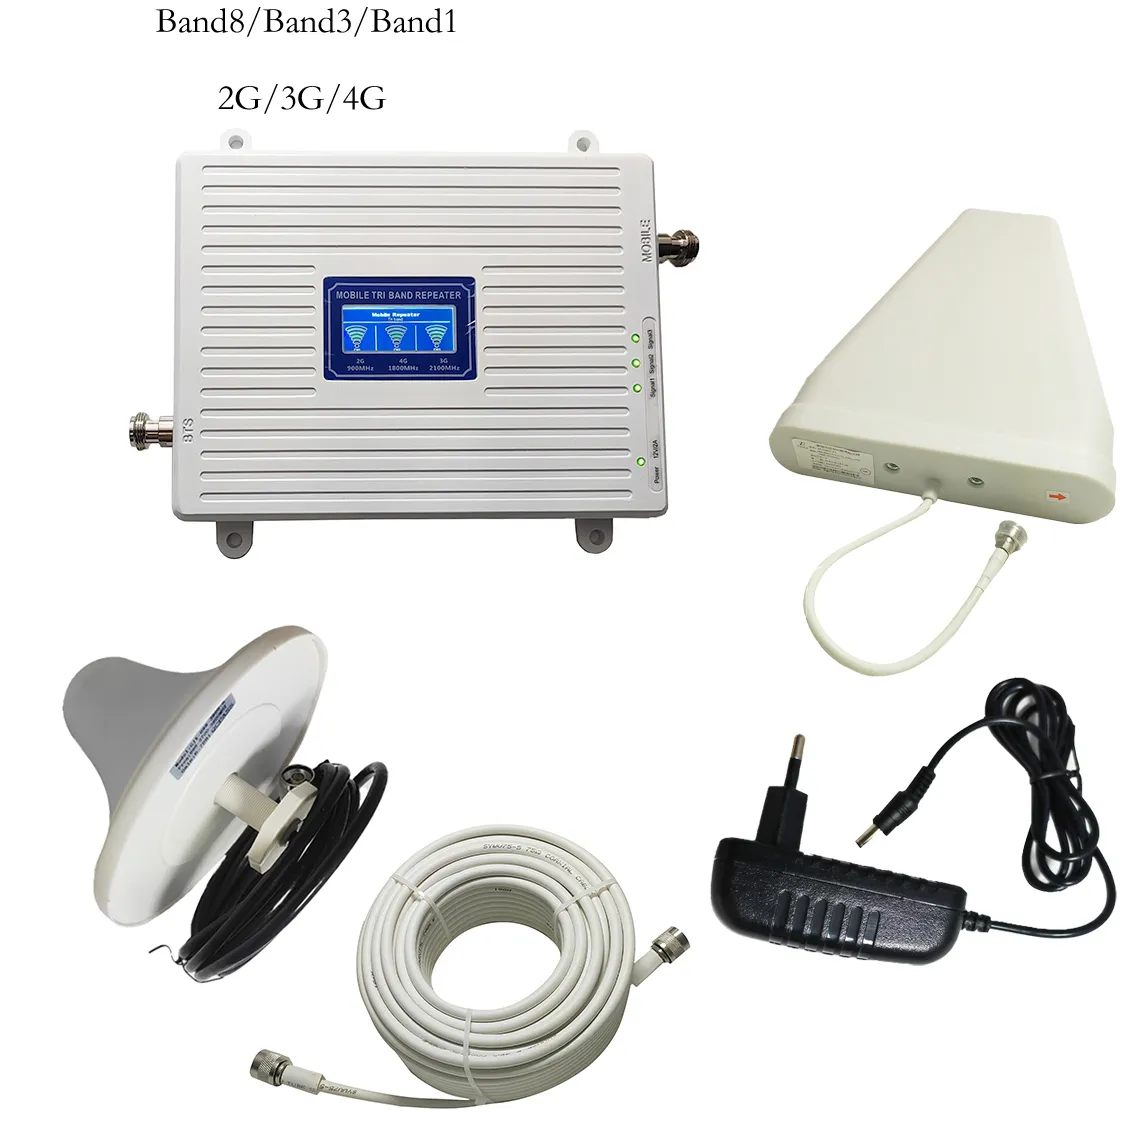 900-1800-2100 мГц 2G 3G 4G сотовый телефон Сетевой ретранслятор/усилитель сигнала